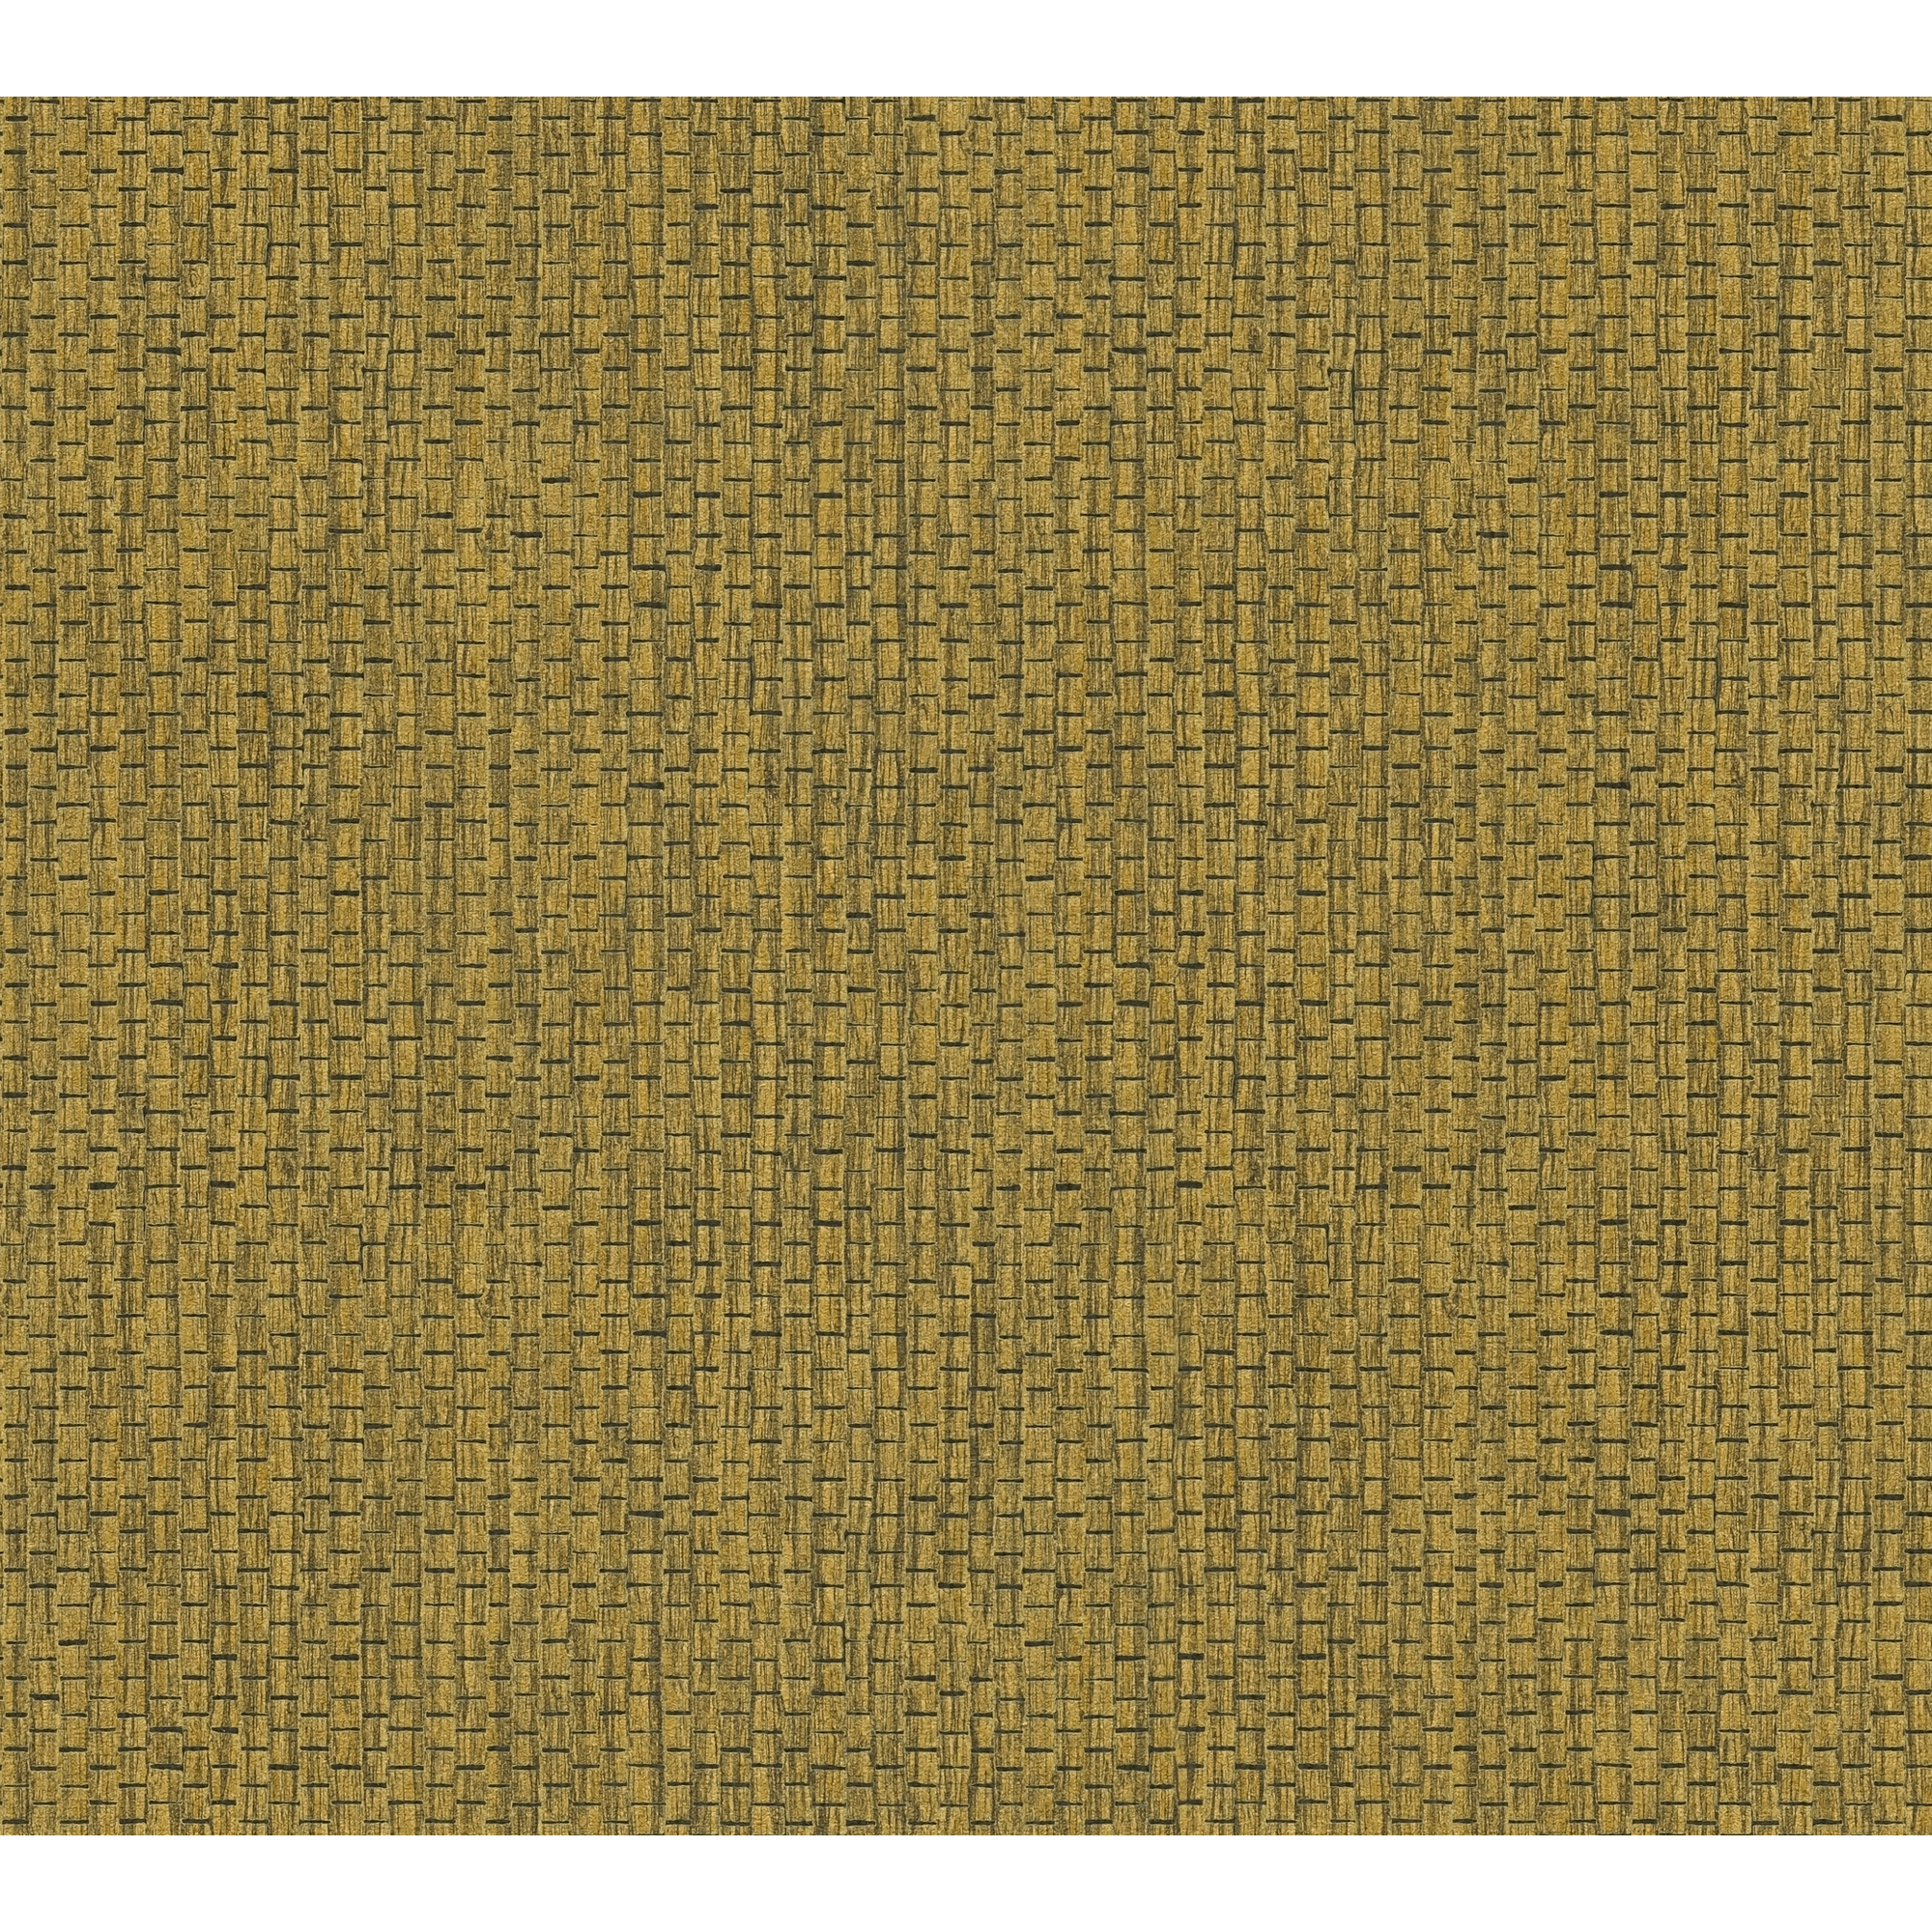 Vliestapete 'Hygge 2' Uni Gewebe strukturiert gelb/schwarz 10,05 x 0,53 m + product picture